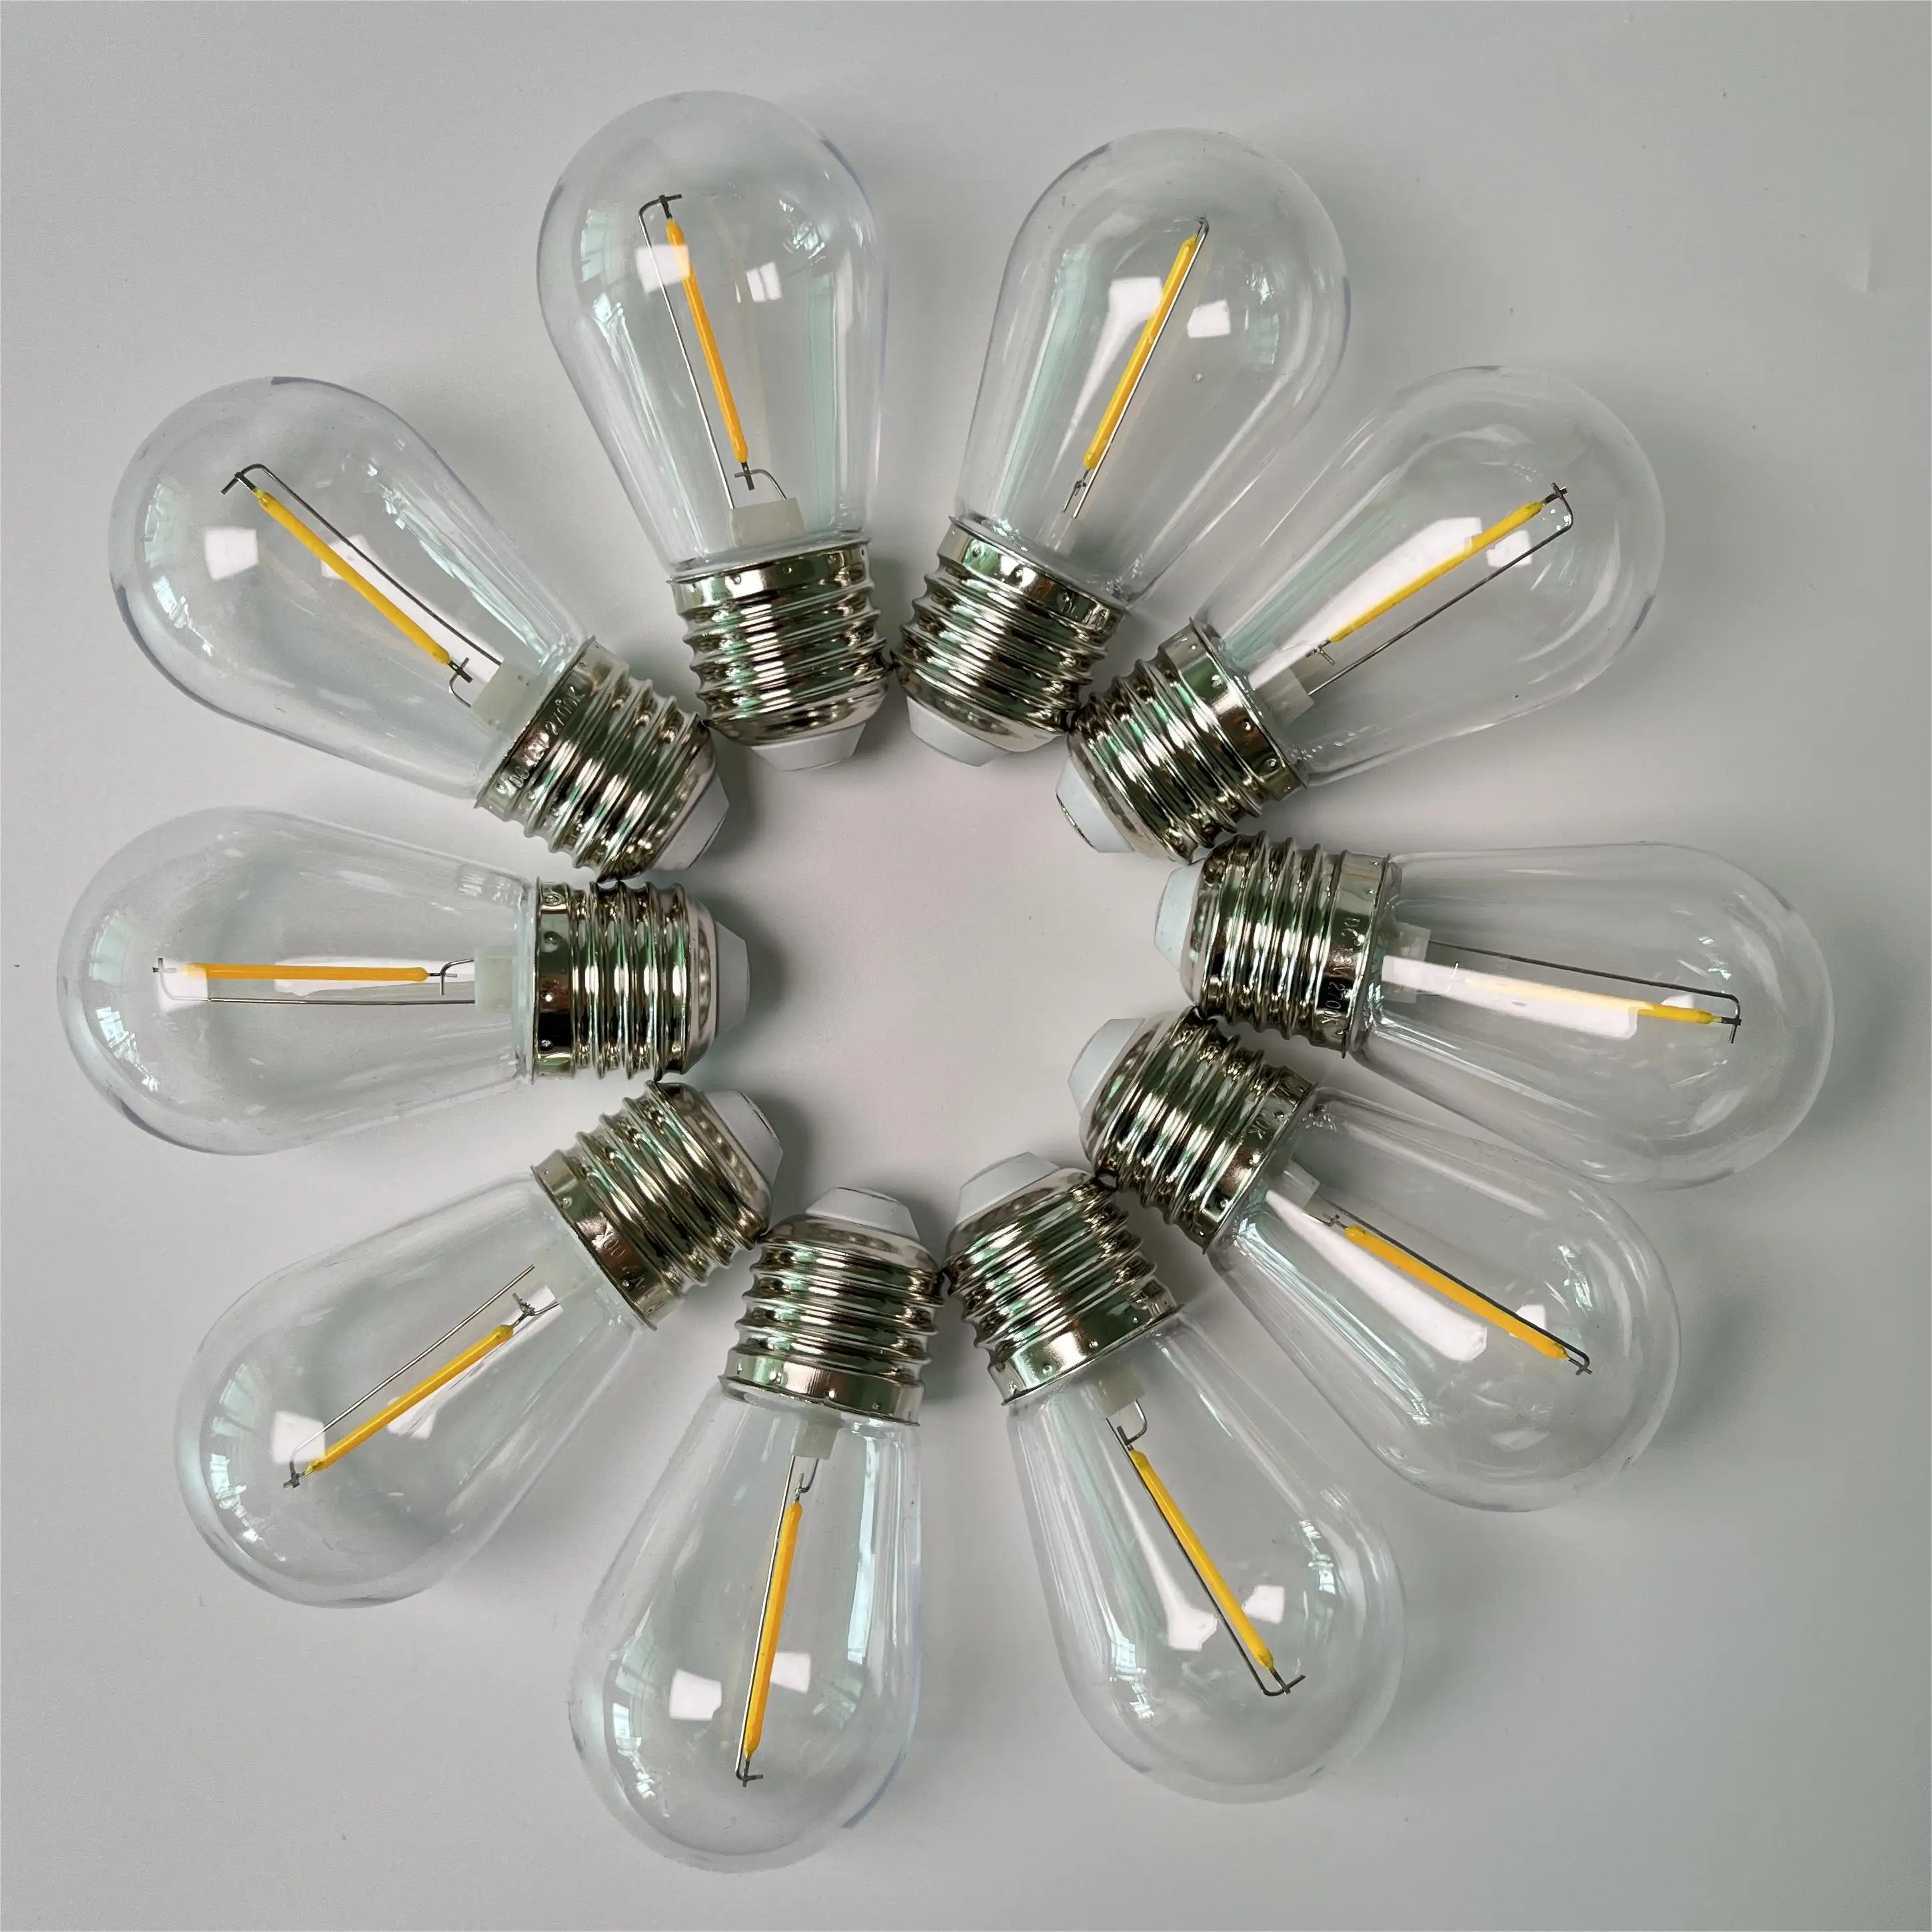 Hot Sales S14 G45 Outdoor String Light Bulb 1W 2W E26 E27 Low Voltage DC3V 12V 24V Led Filament bulb